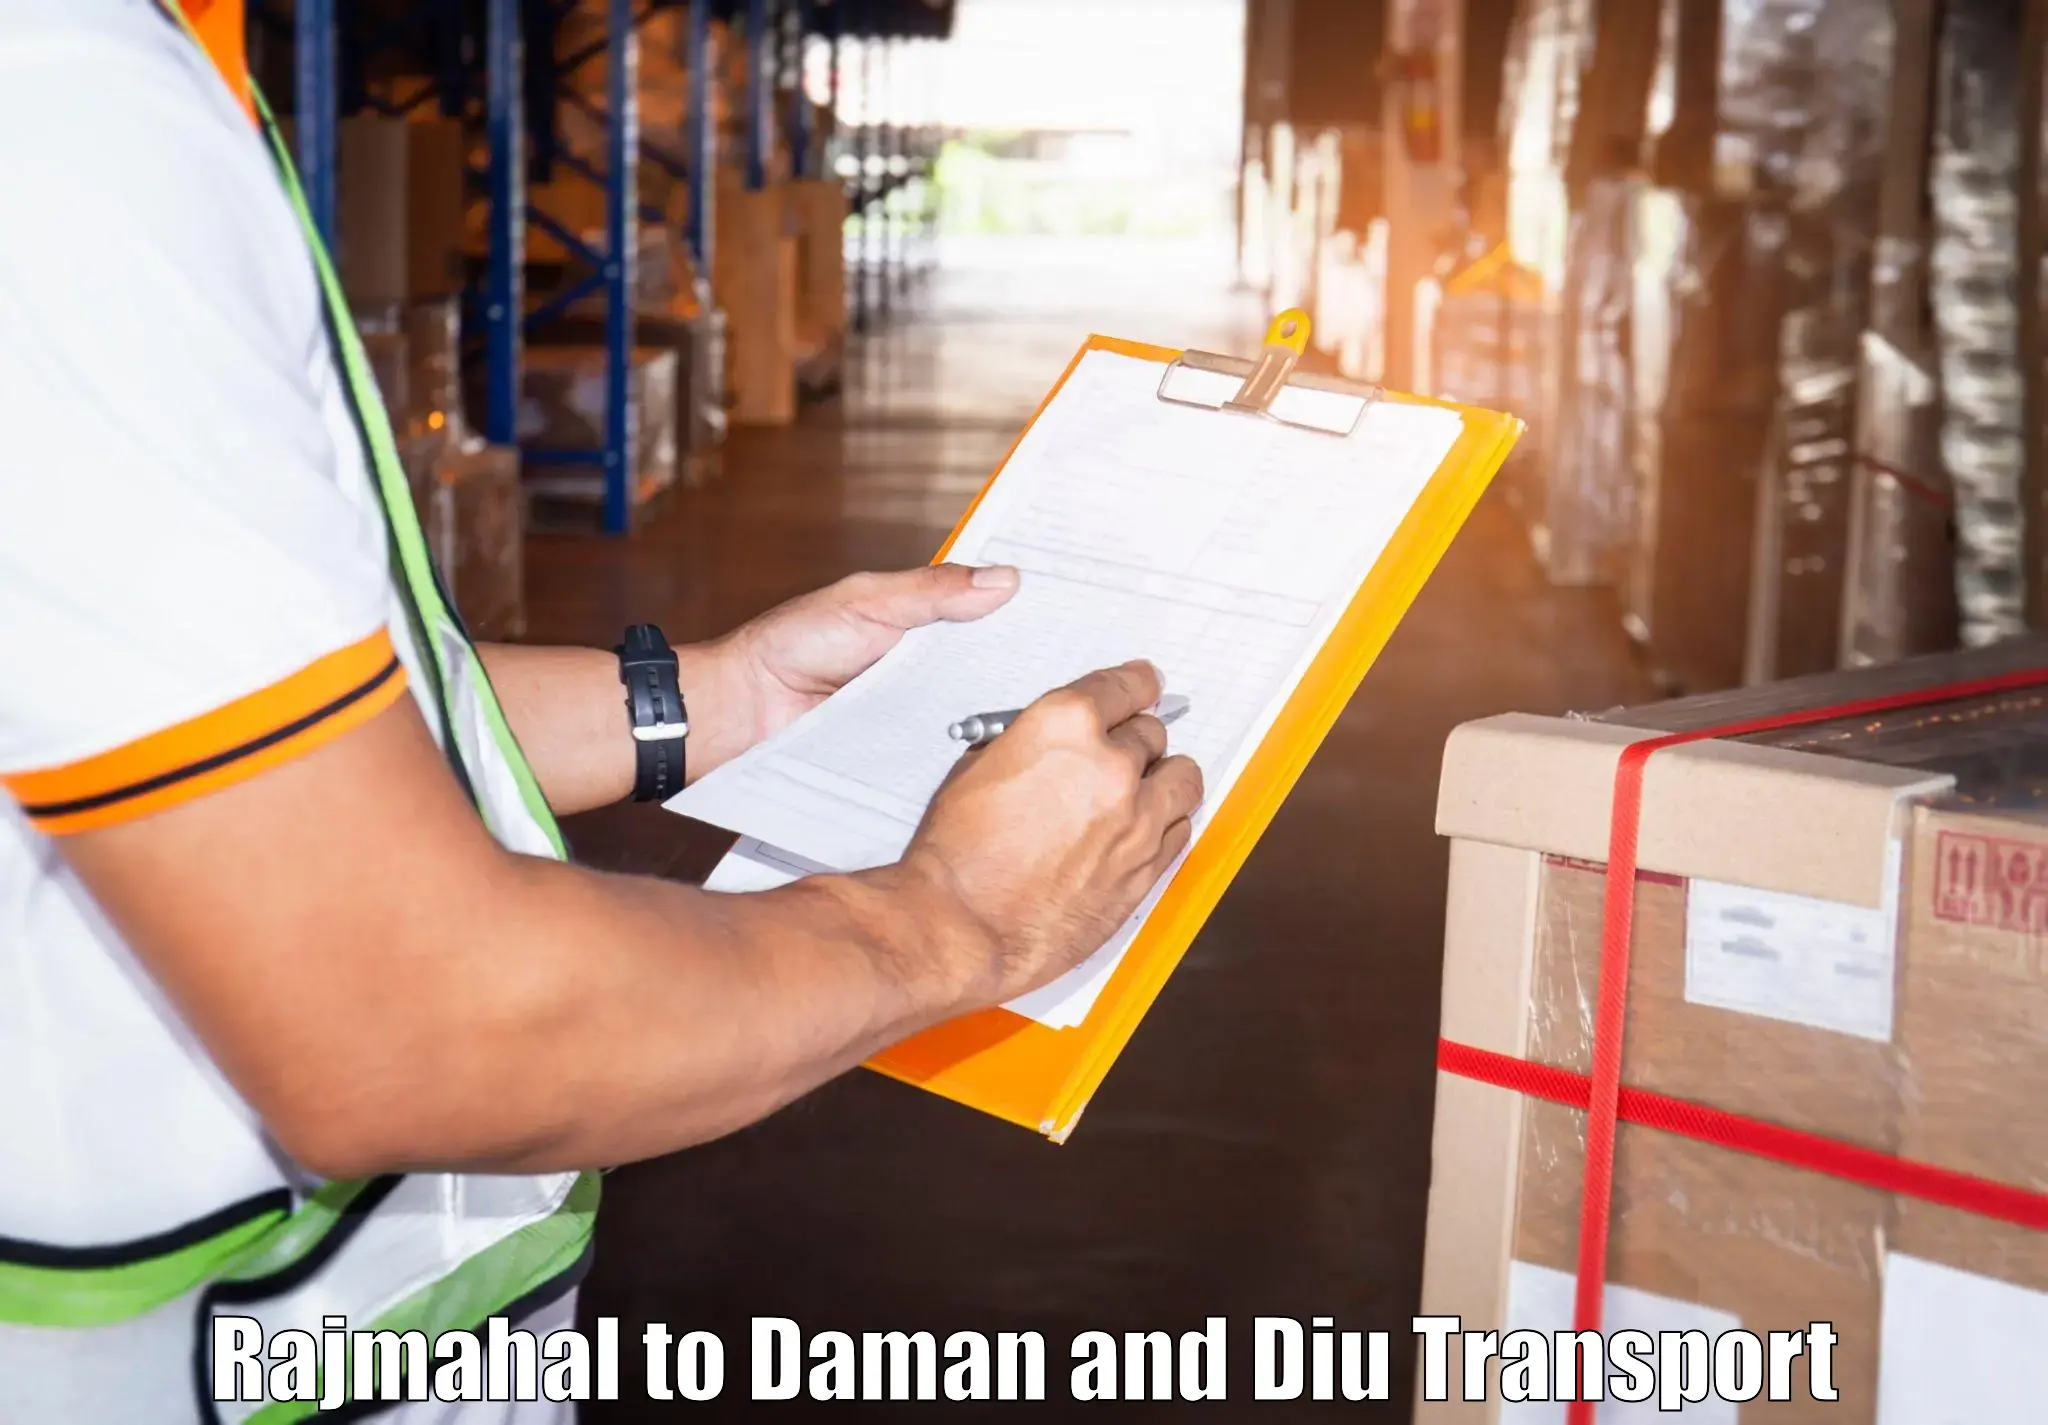 Transport shared services Rajmahal to Daman and Diu